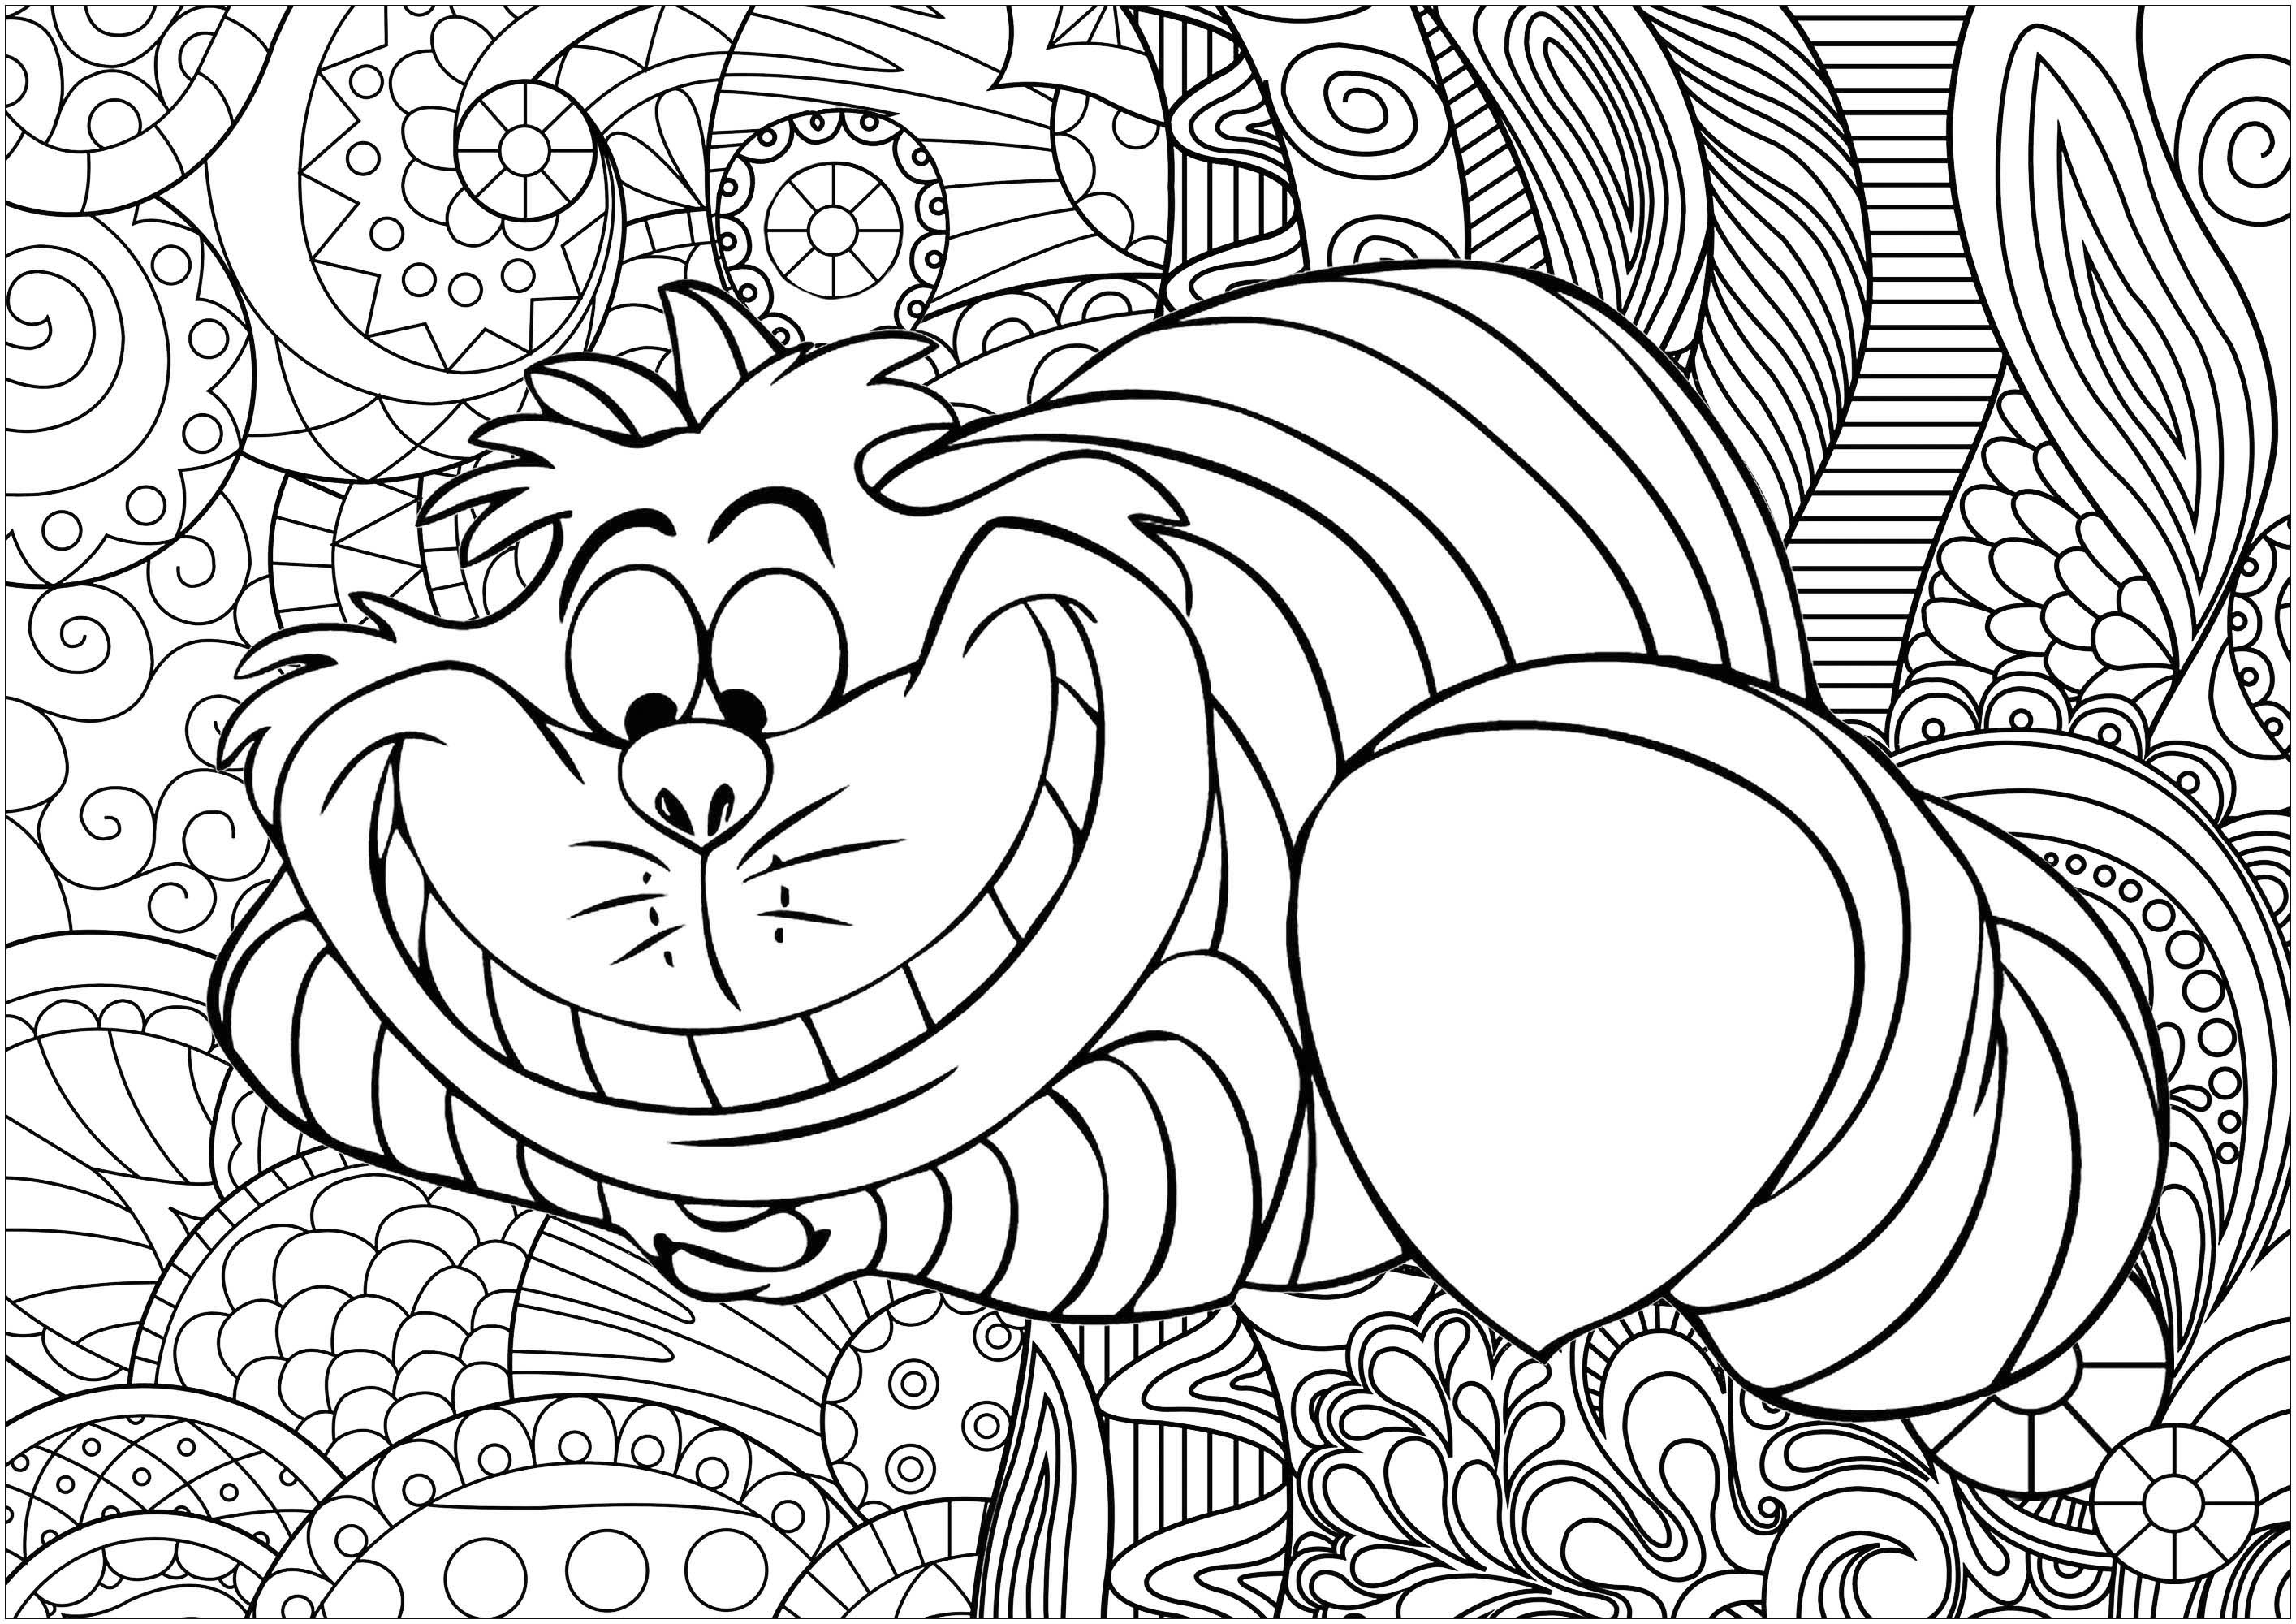 Coloriez le célèbre chat Cheshire d’Alice au Pays des merveilles, écrit par Lewis Carroll et popularisé par le film d’animation de Disney.  Le fond avec motifs abstraits a été créé par Caillou.